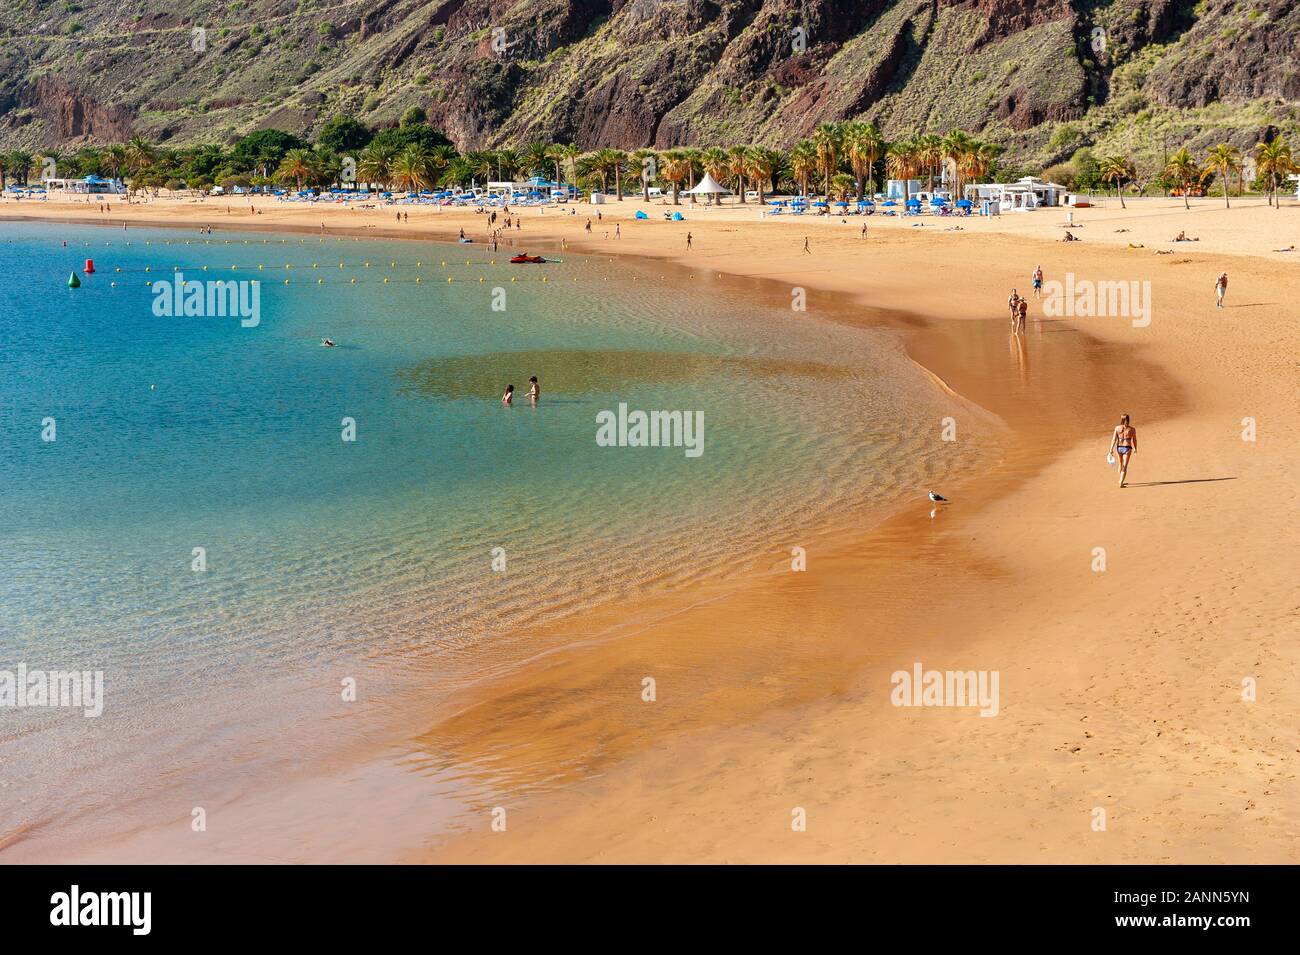 Playa de Las Teresitas ist der schönste Strand auf der Kanarischen Insel Teneriffa. Der weiße Sand aus der Sahara ausgeliefert. Stockfoto